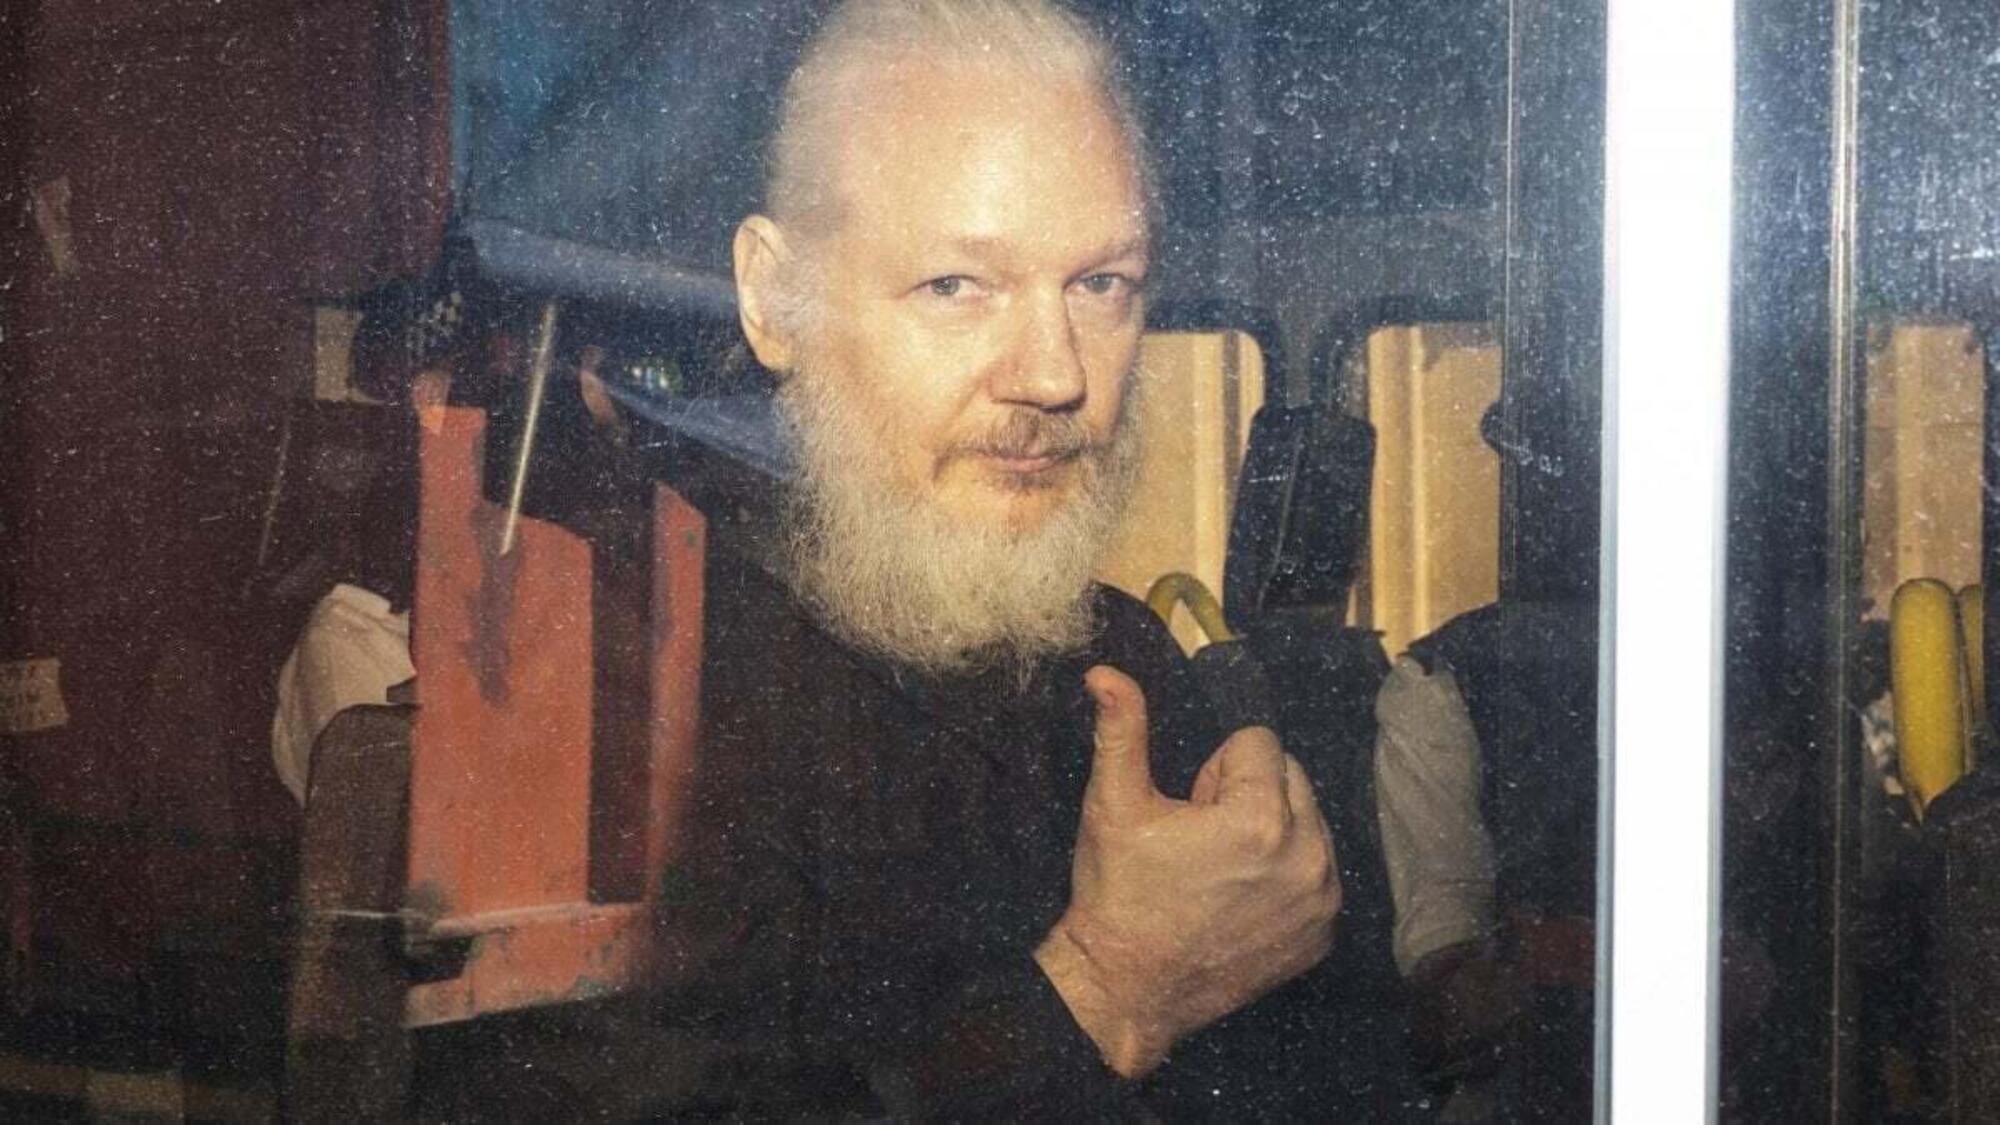 20221017 121557615 5558Julian Assange, fondatore di Wikileaks, che oggi rischia l&#039;estradizione in USA con l&#039;accusa di spionaggio